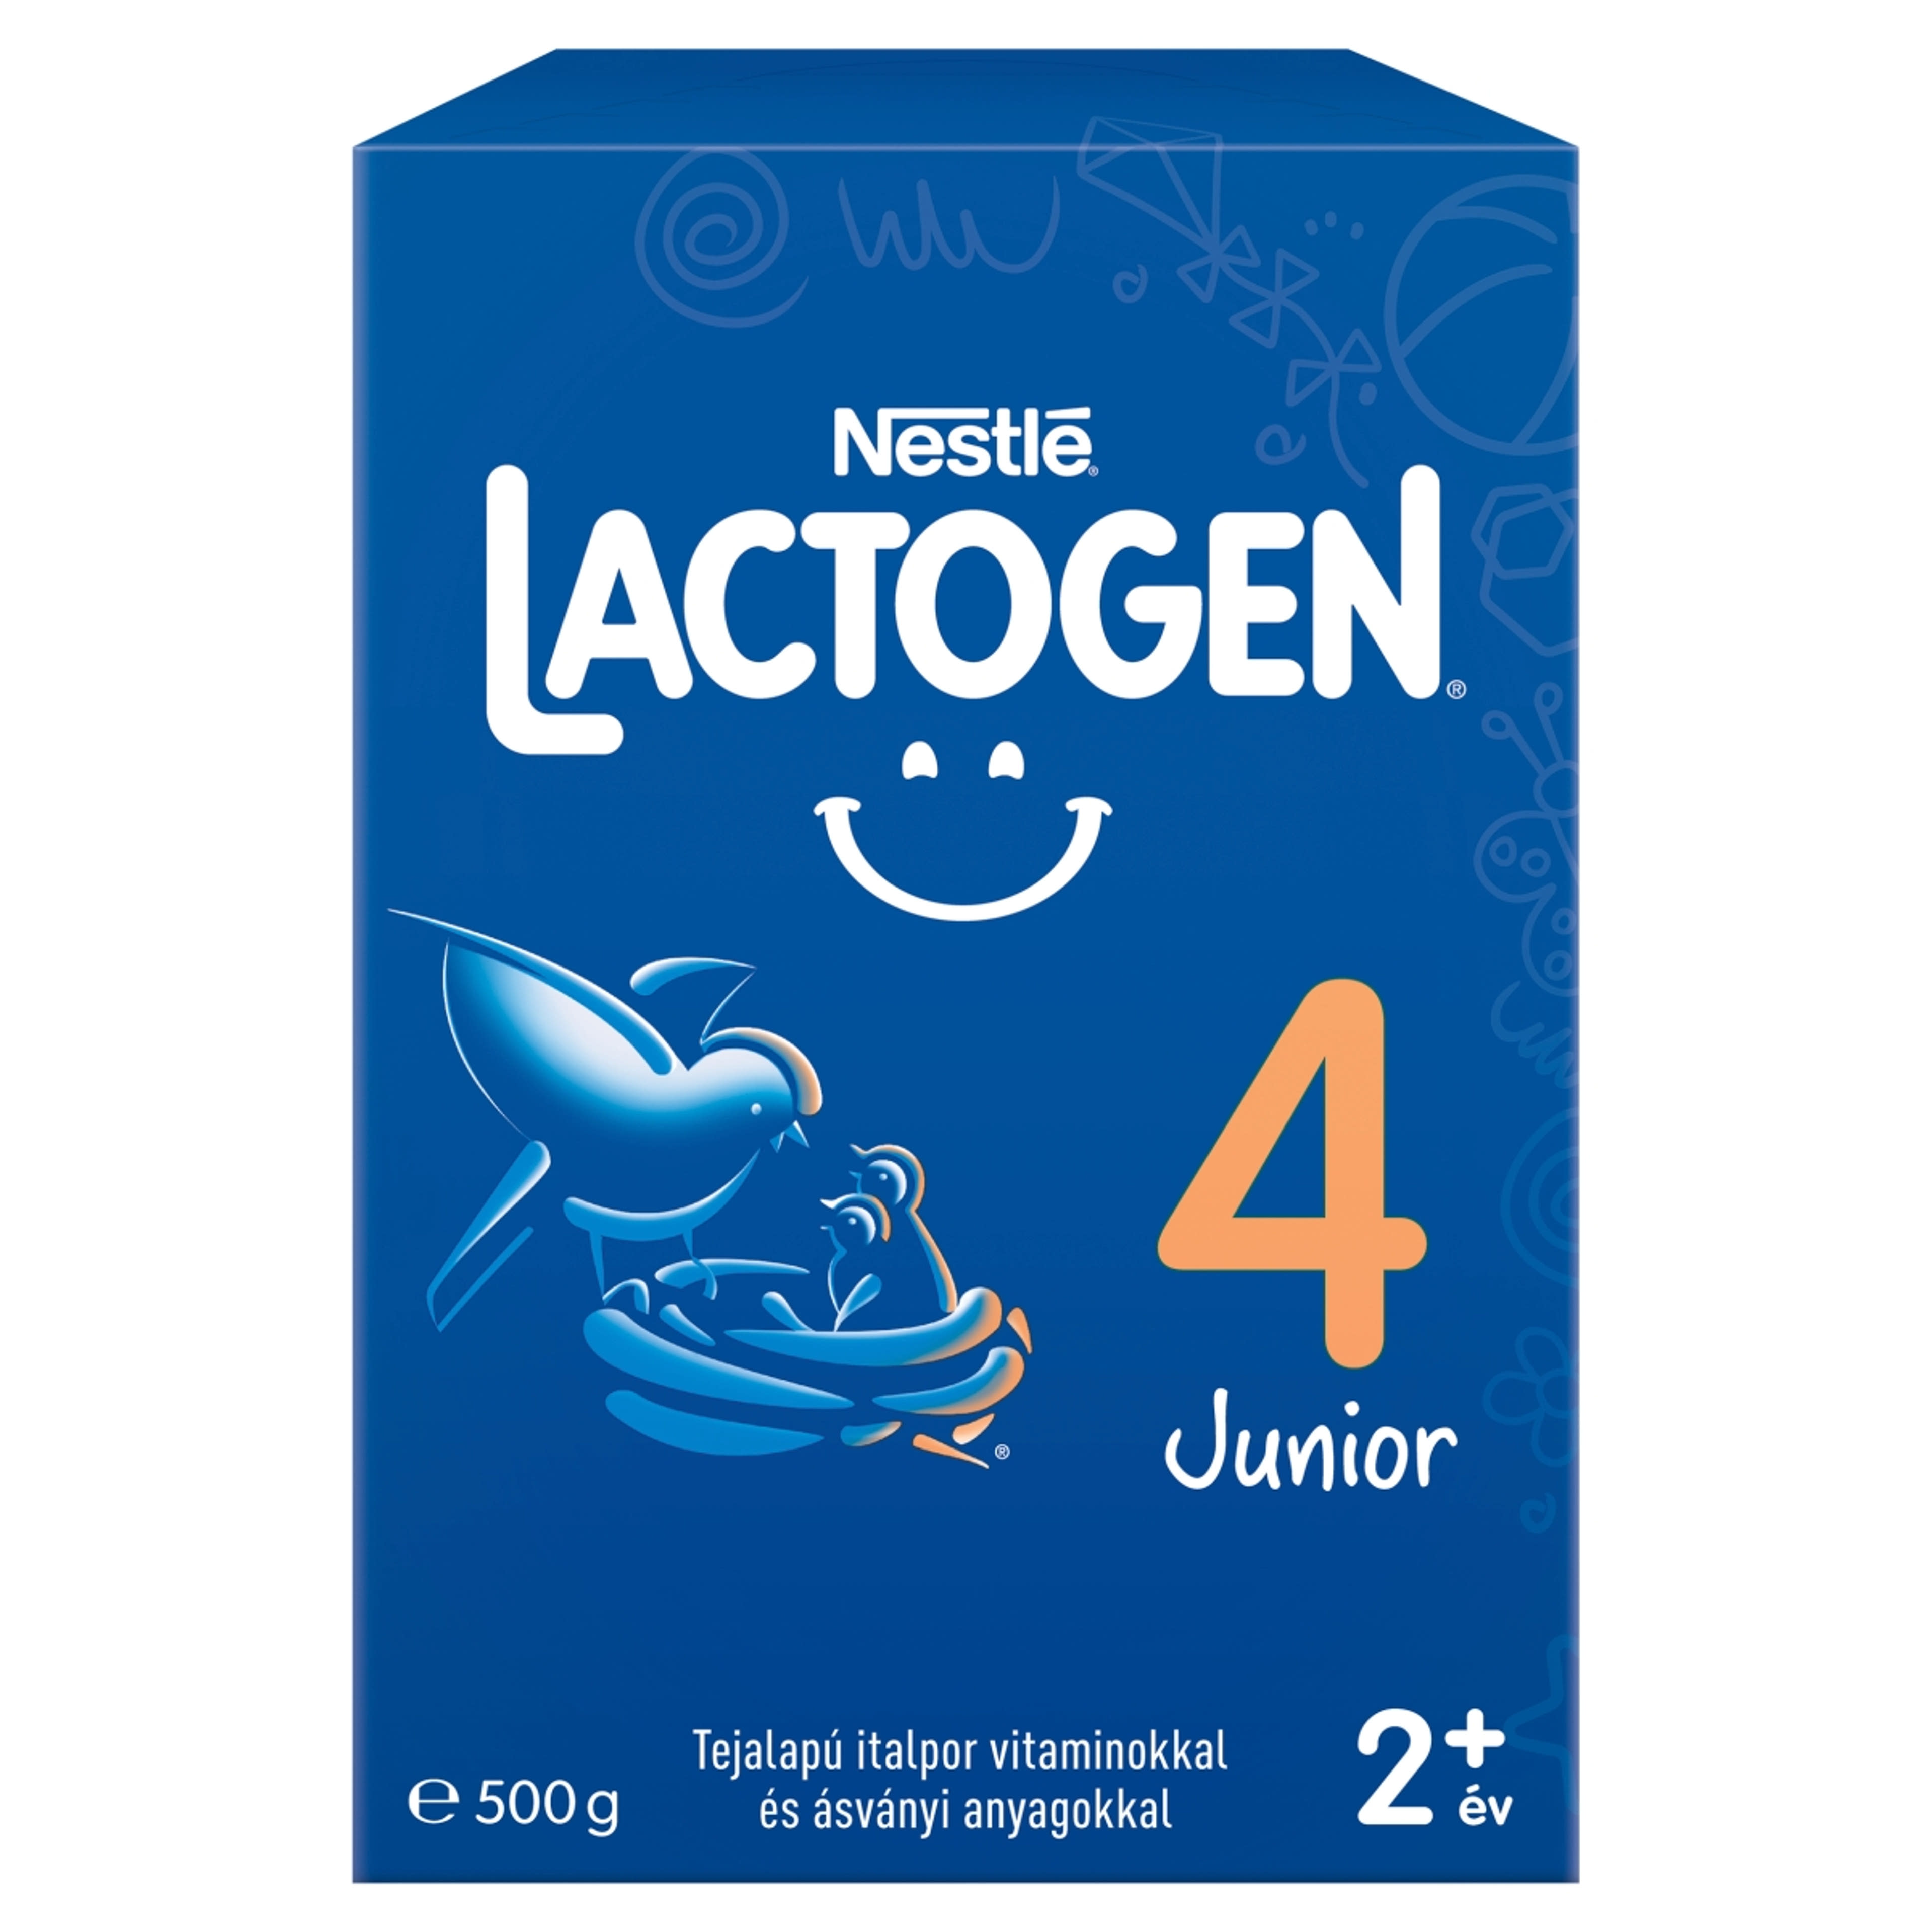 Lactogen 4 Junior tejalapú italpor vitaminokkal és ásványi anyagokkal 24 hónapos kortól - 500 g